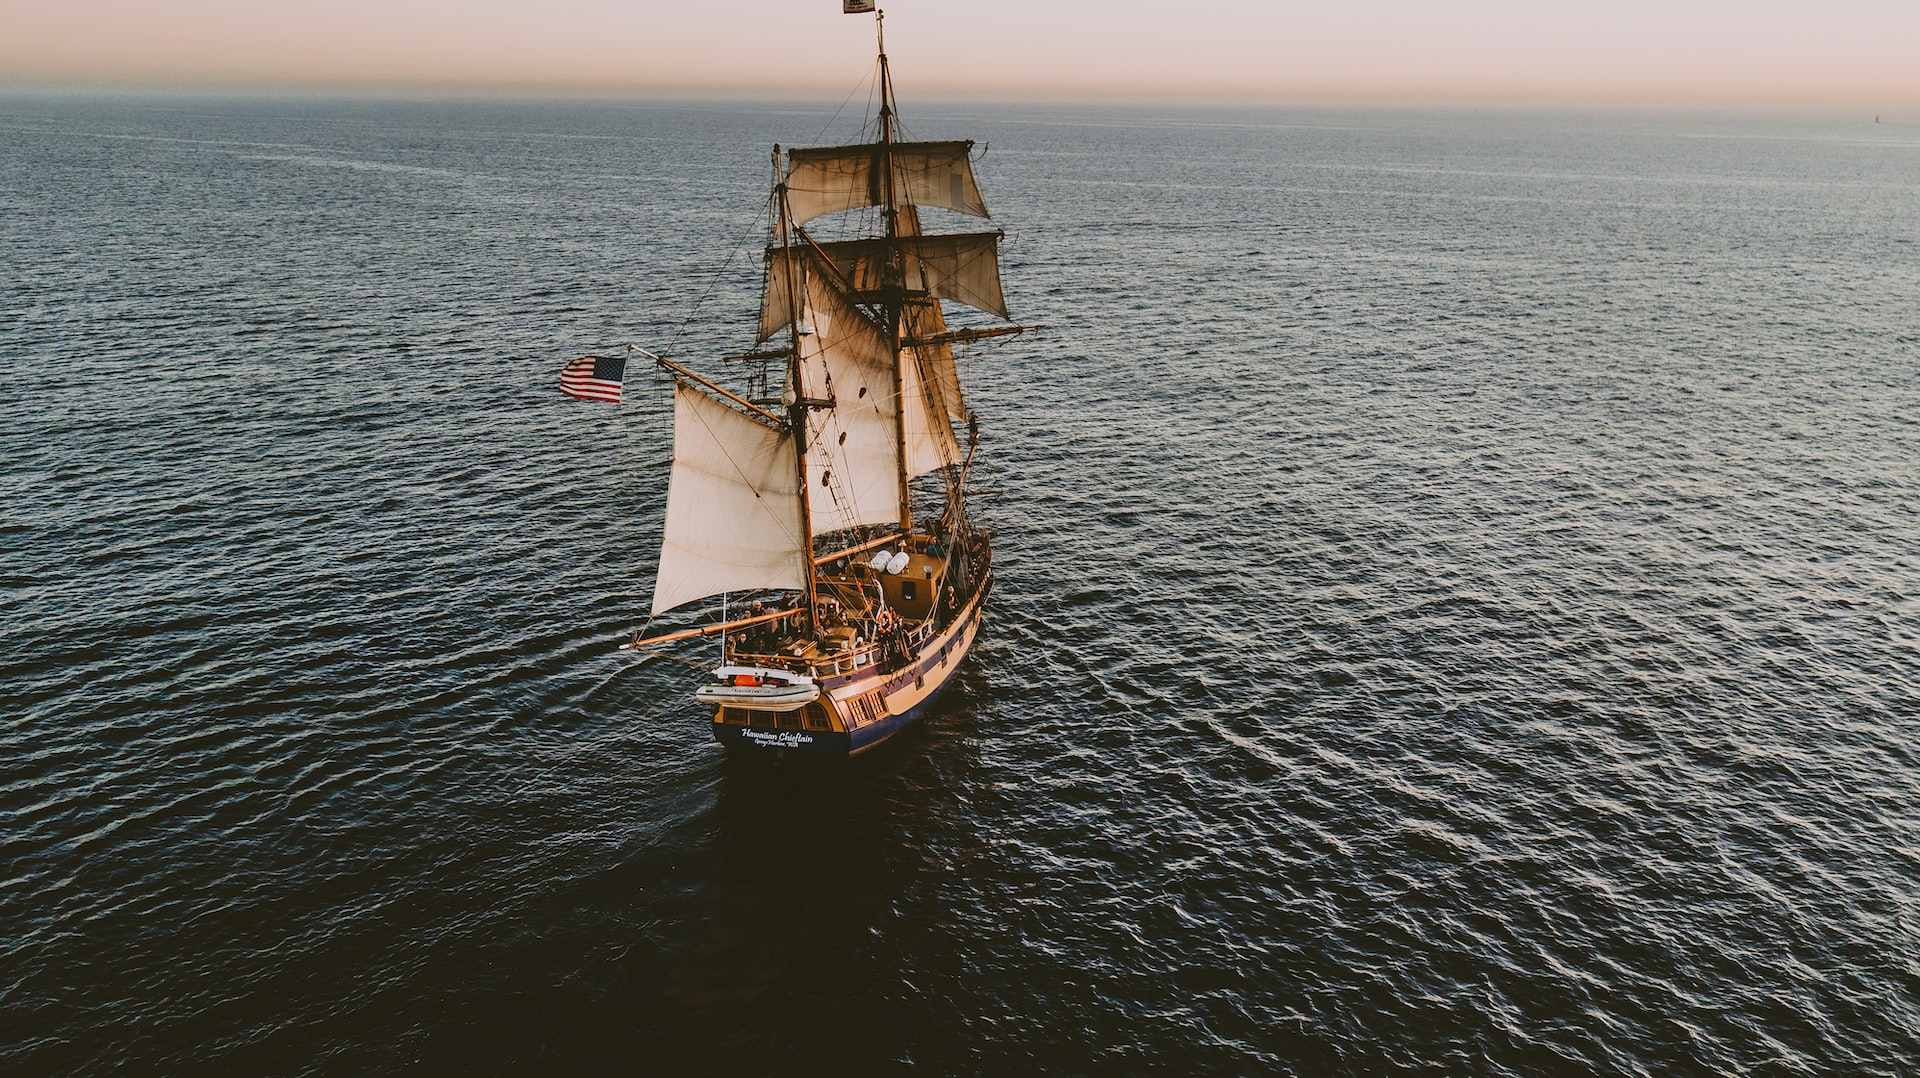 A pirate ship at sea.